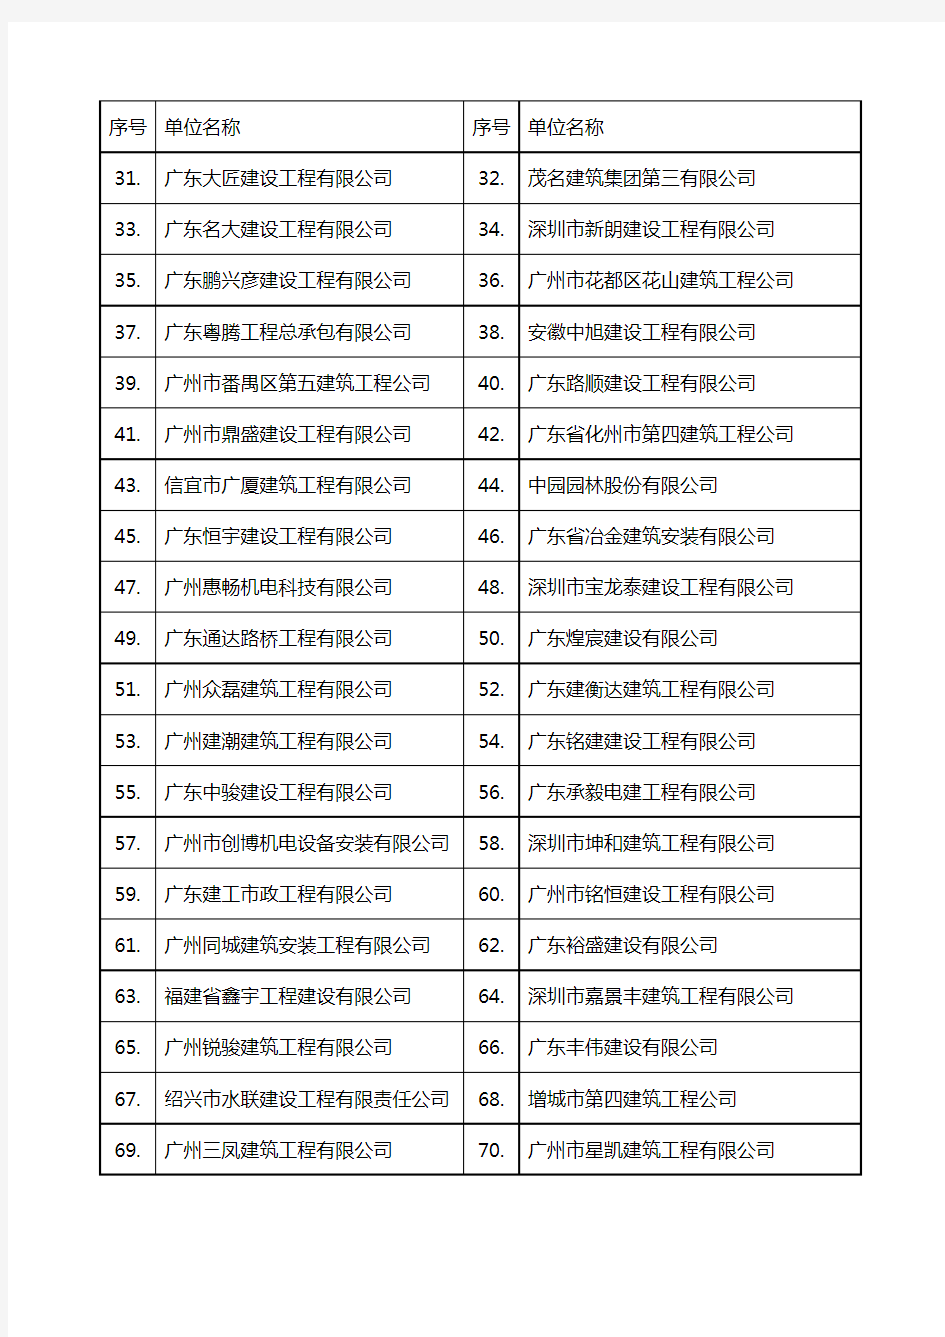 广州市城乡建设委员会小额工程企业库名单